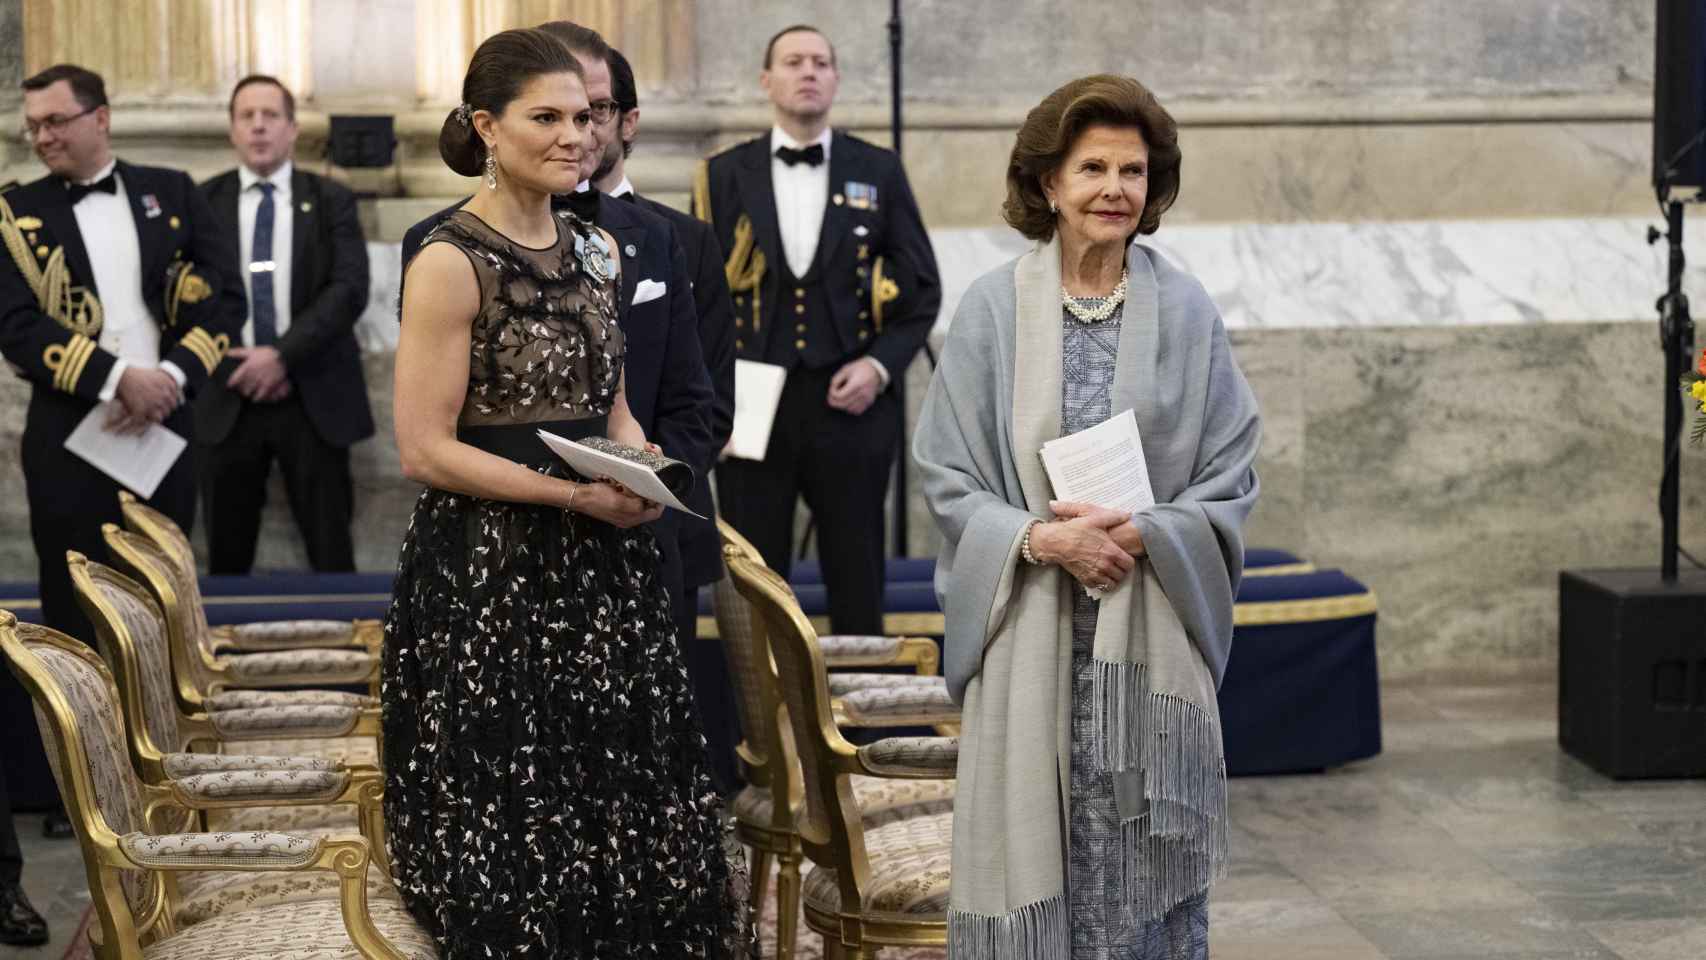 Victoria de Suecia junto a su madre, la reina Silvia, durante la cena de gala en el Palacio Real.